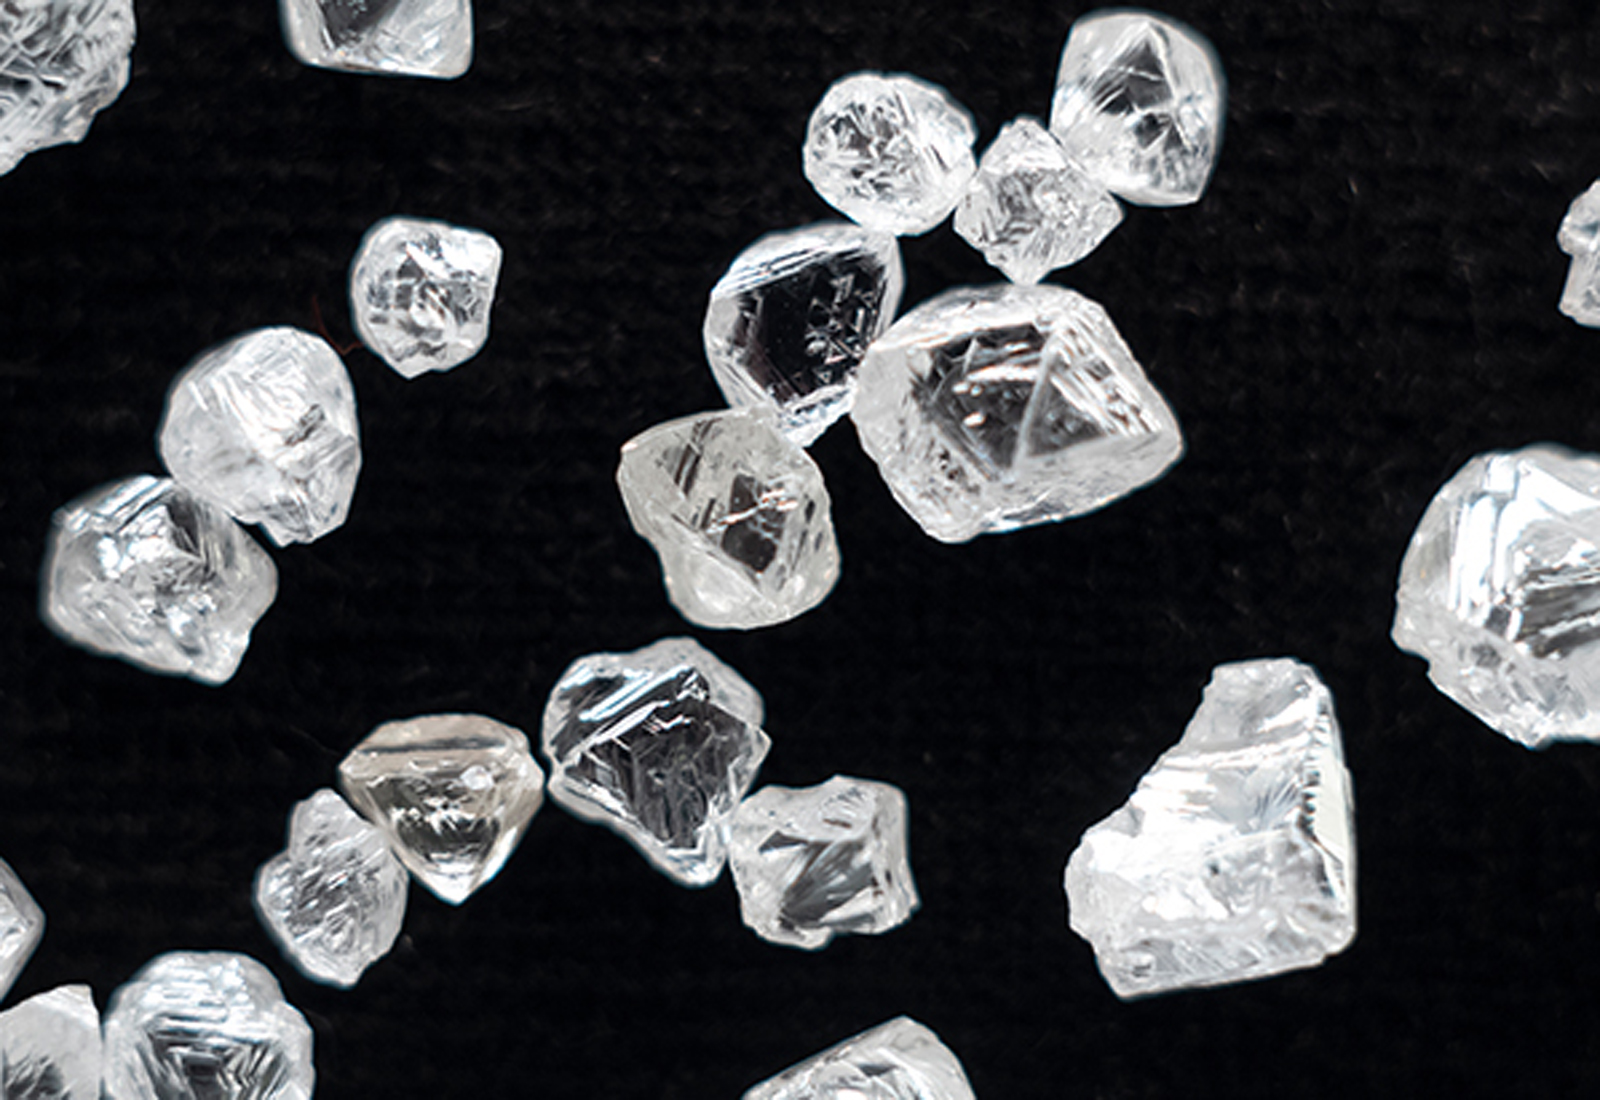 De Beers and the Diamond Industry